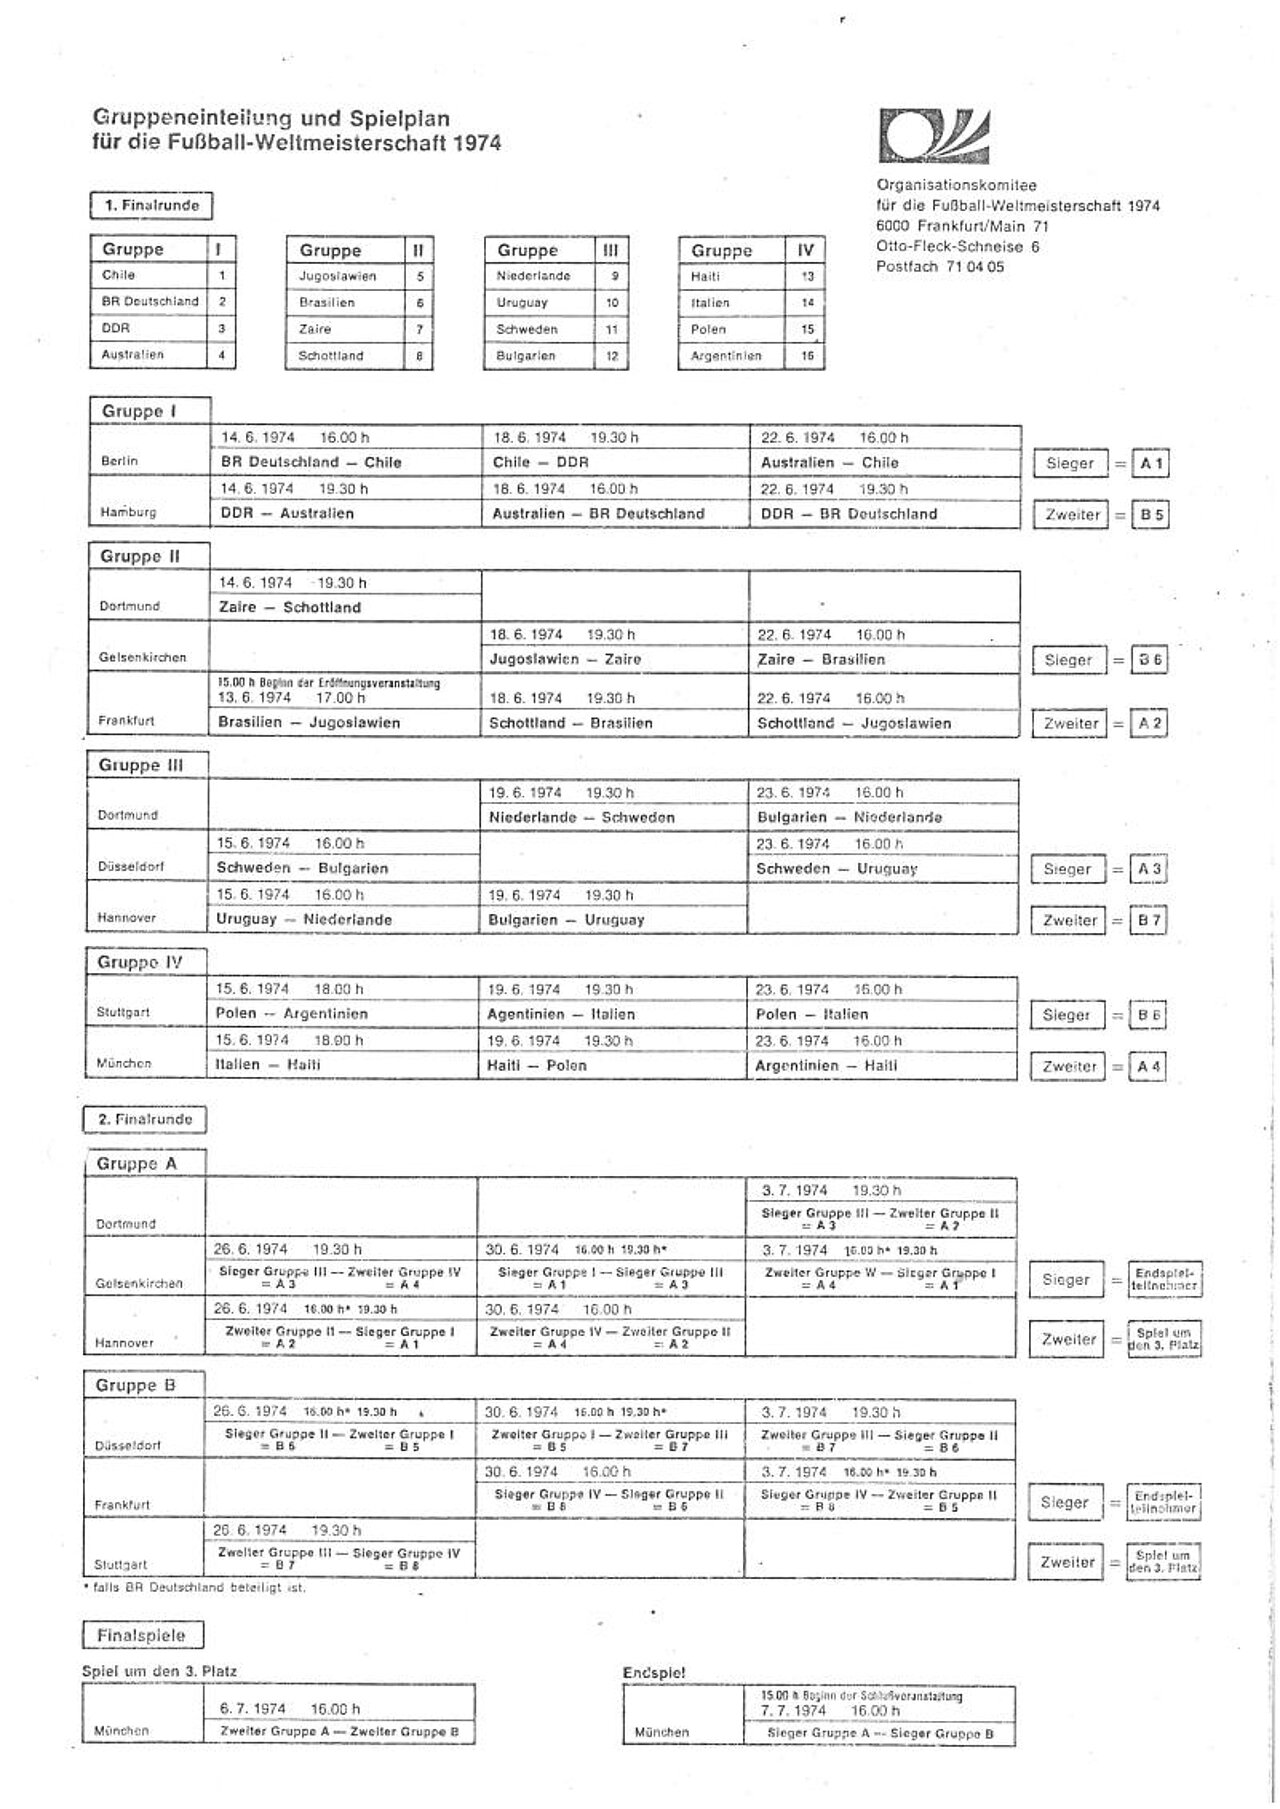 Gruppeneinteilung und Spielplan, Organisationskomitee der Fußball-WM 1974, Bundesarchiv B 106/ 50071